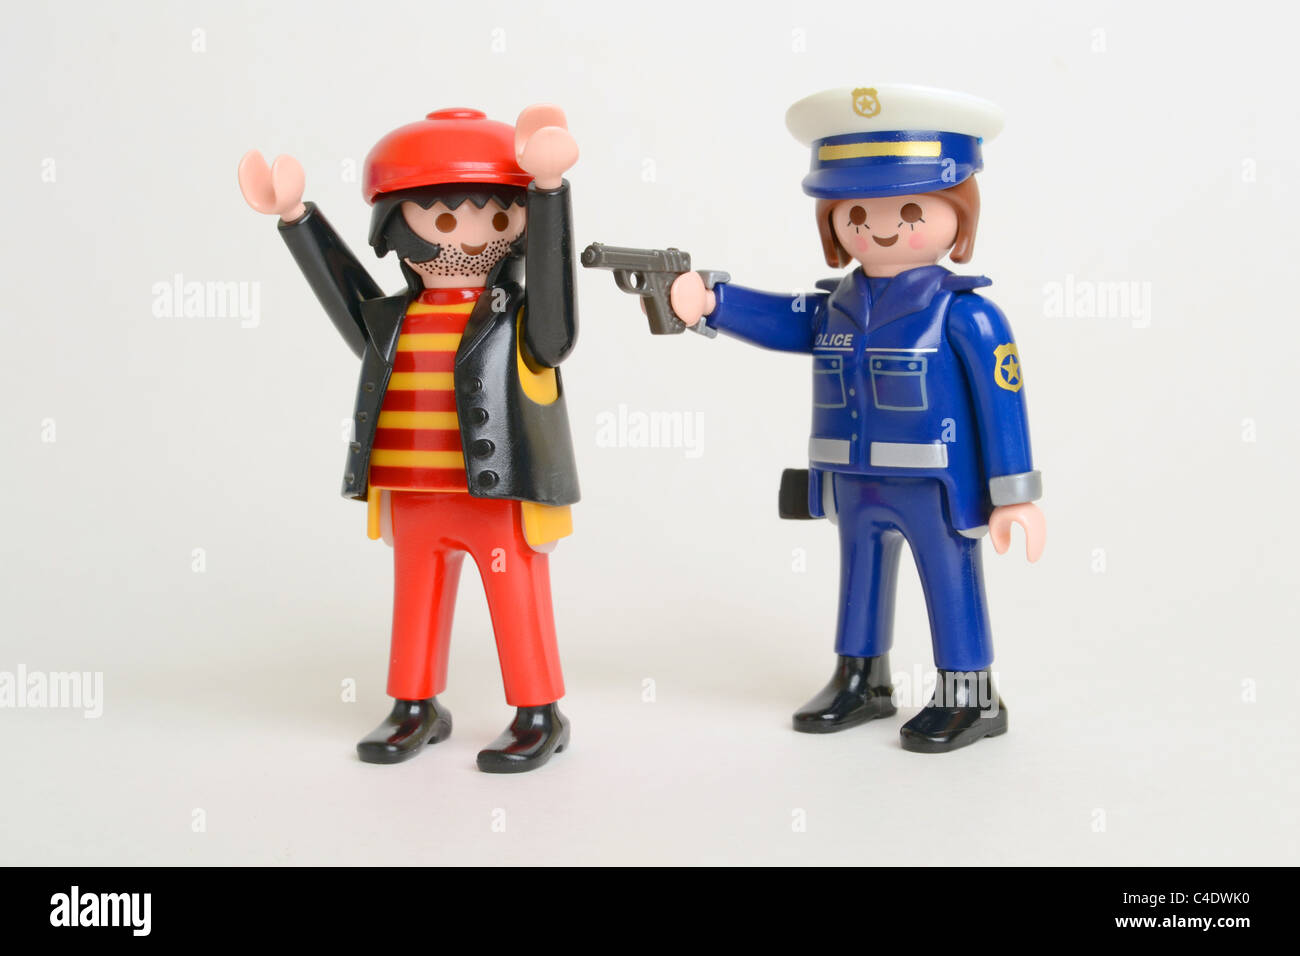 Police Officer criminal arrested arrest crime law gun pistol under arrest Playmobil Stock Photo